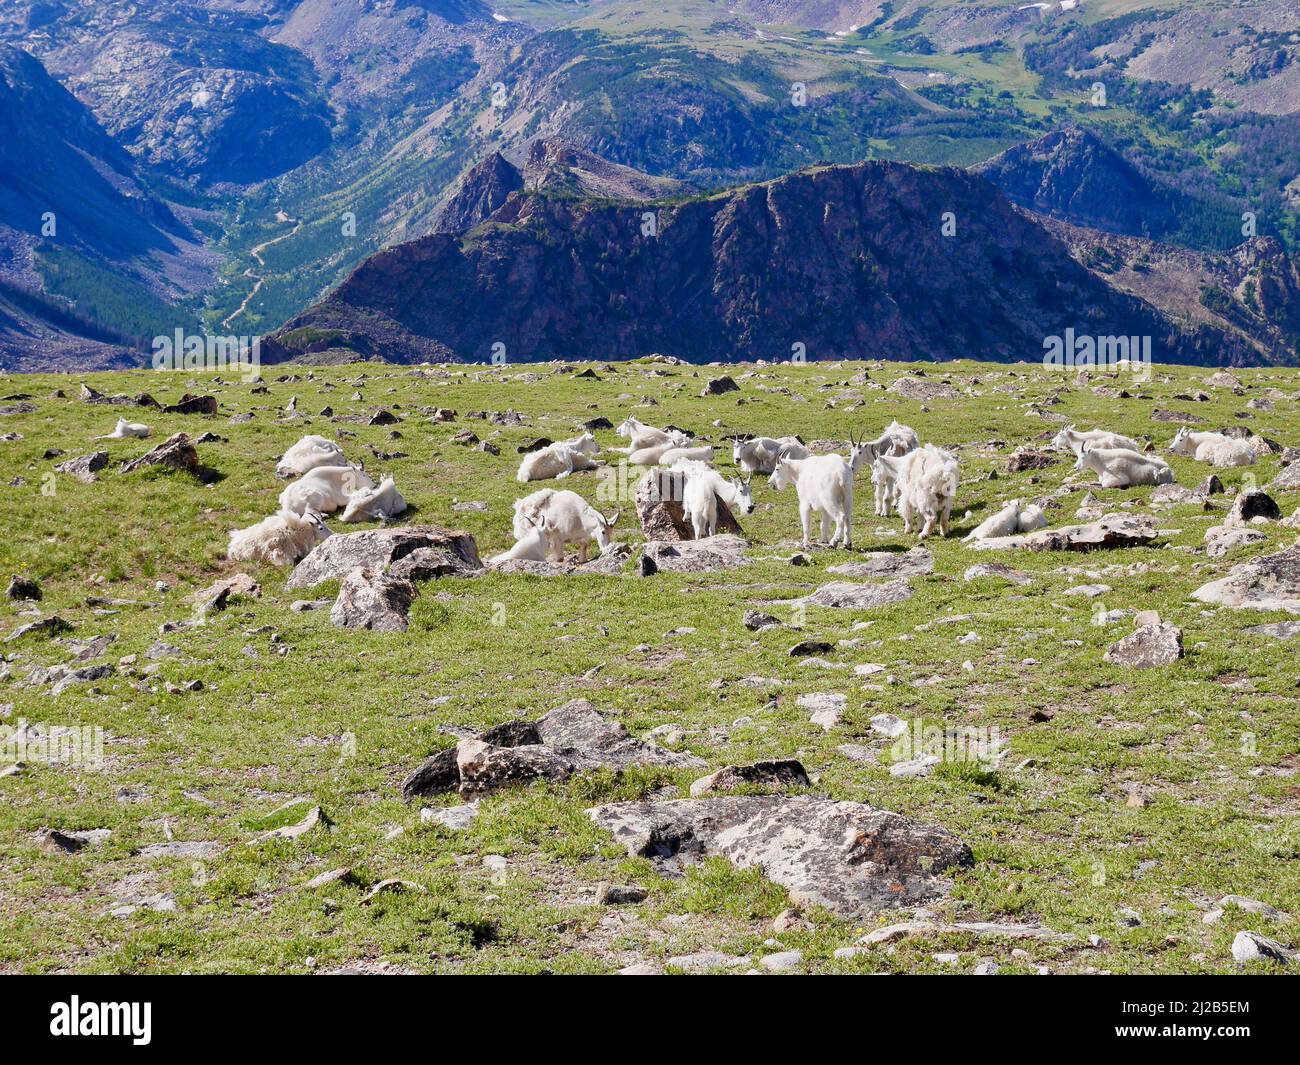 Gregge di capre selvatiche su Beartooth Pass, Wyoming. USA. Foto di alta qualità Foto Stock